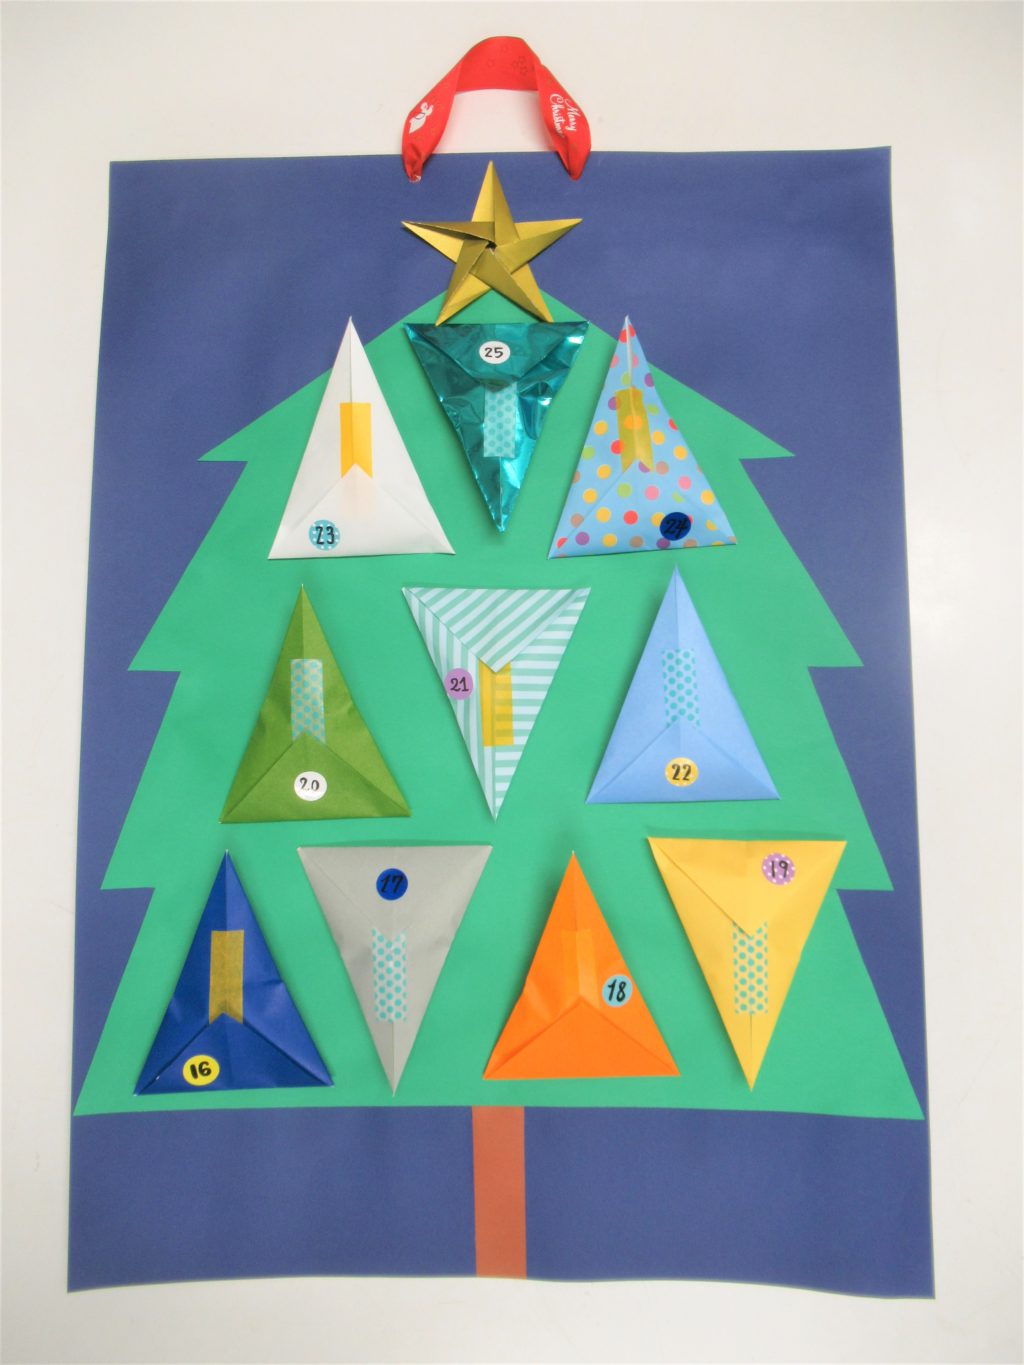 おしらせ 小学生クリスマス工作 アドベントカレンダー 倉敷児童館